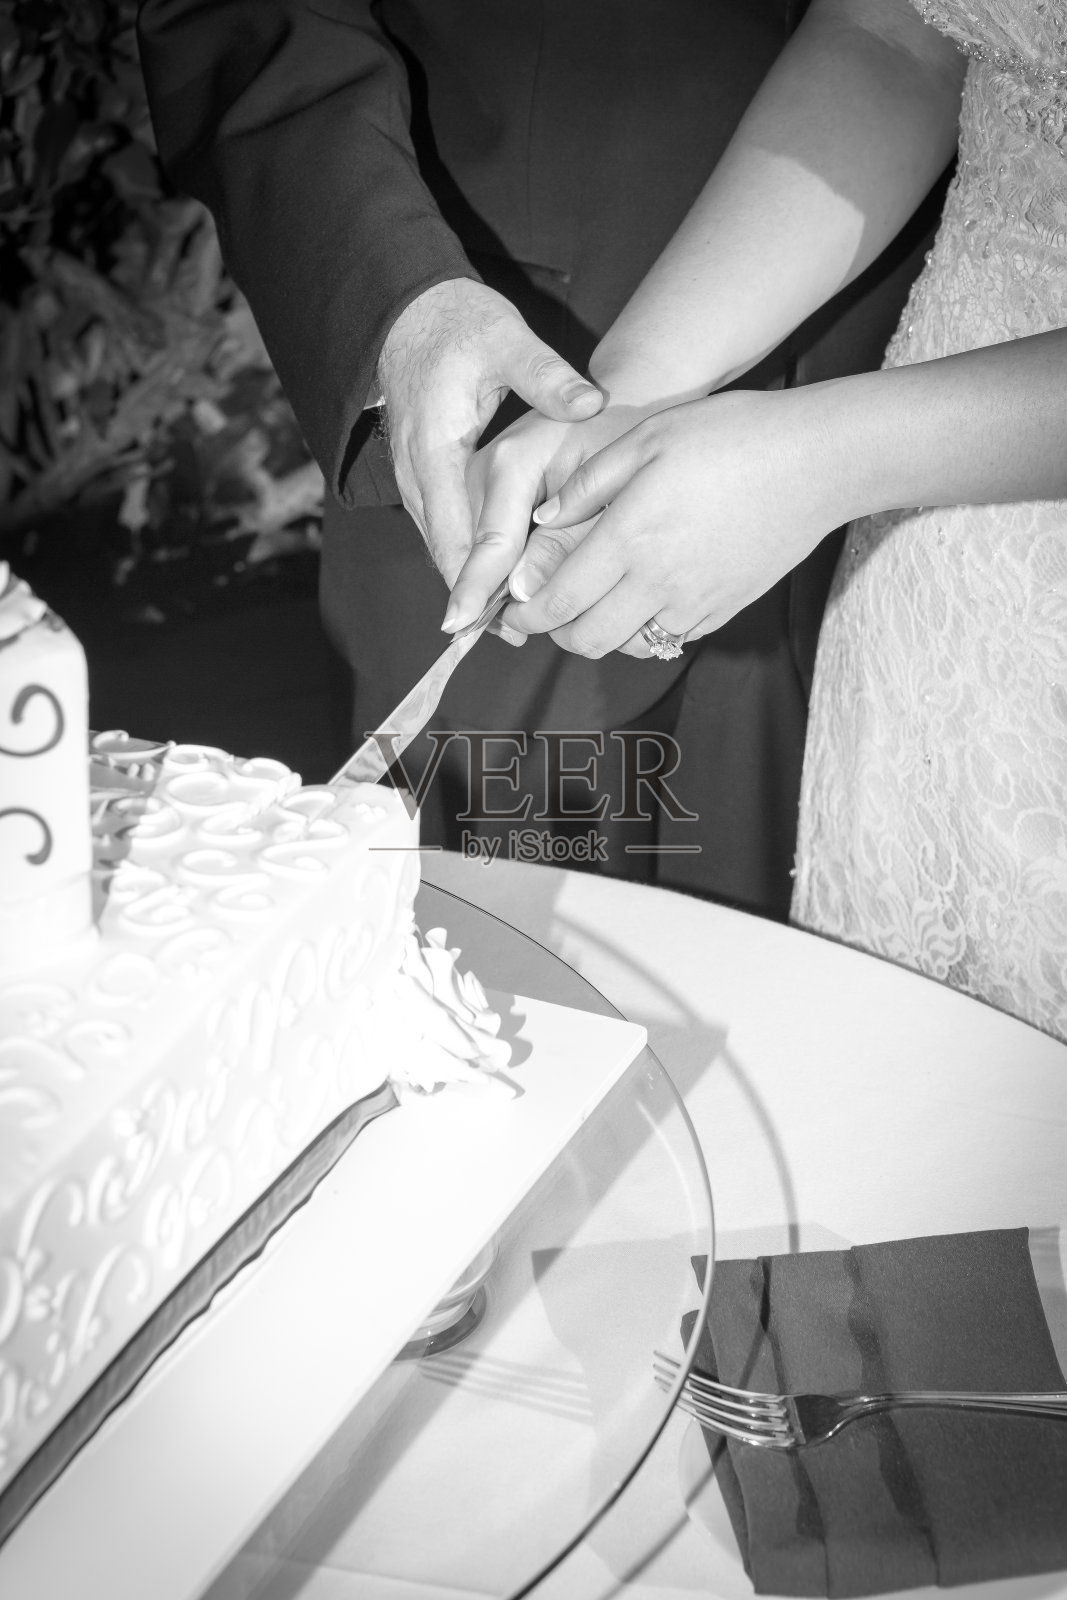 新娘和新郎一起切婚礼蛋糕照片摄影图片